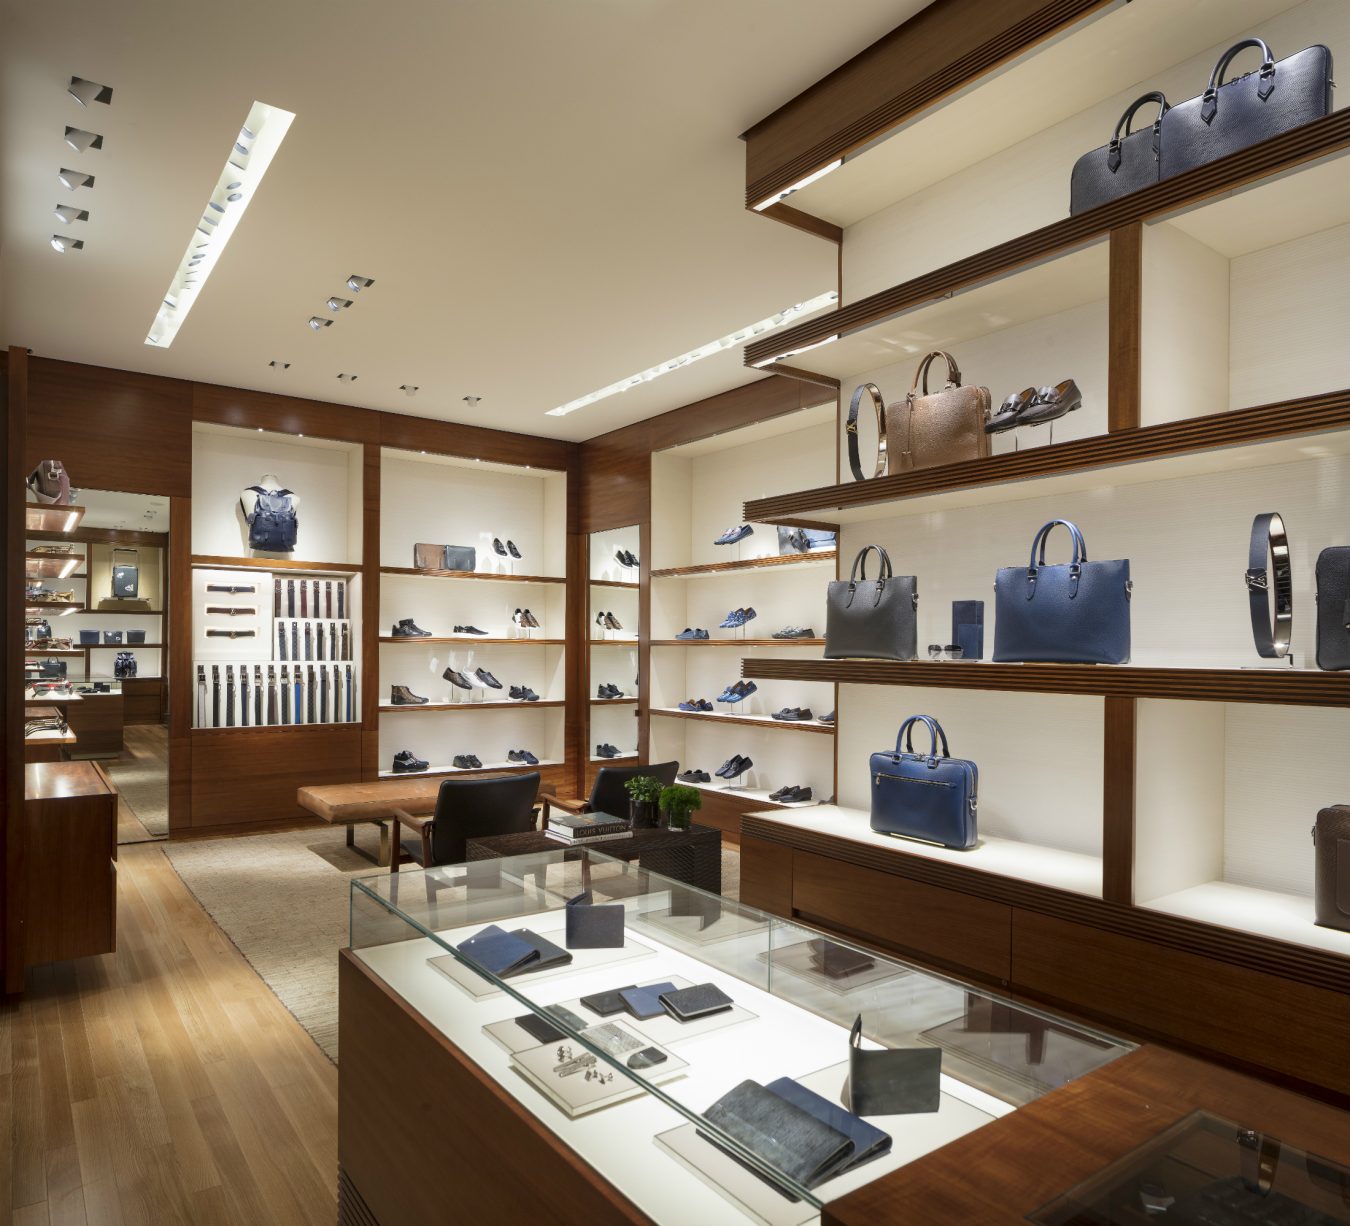 Louis Vuitton Holt Renfrew Vancouver store, Canada